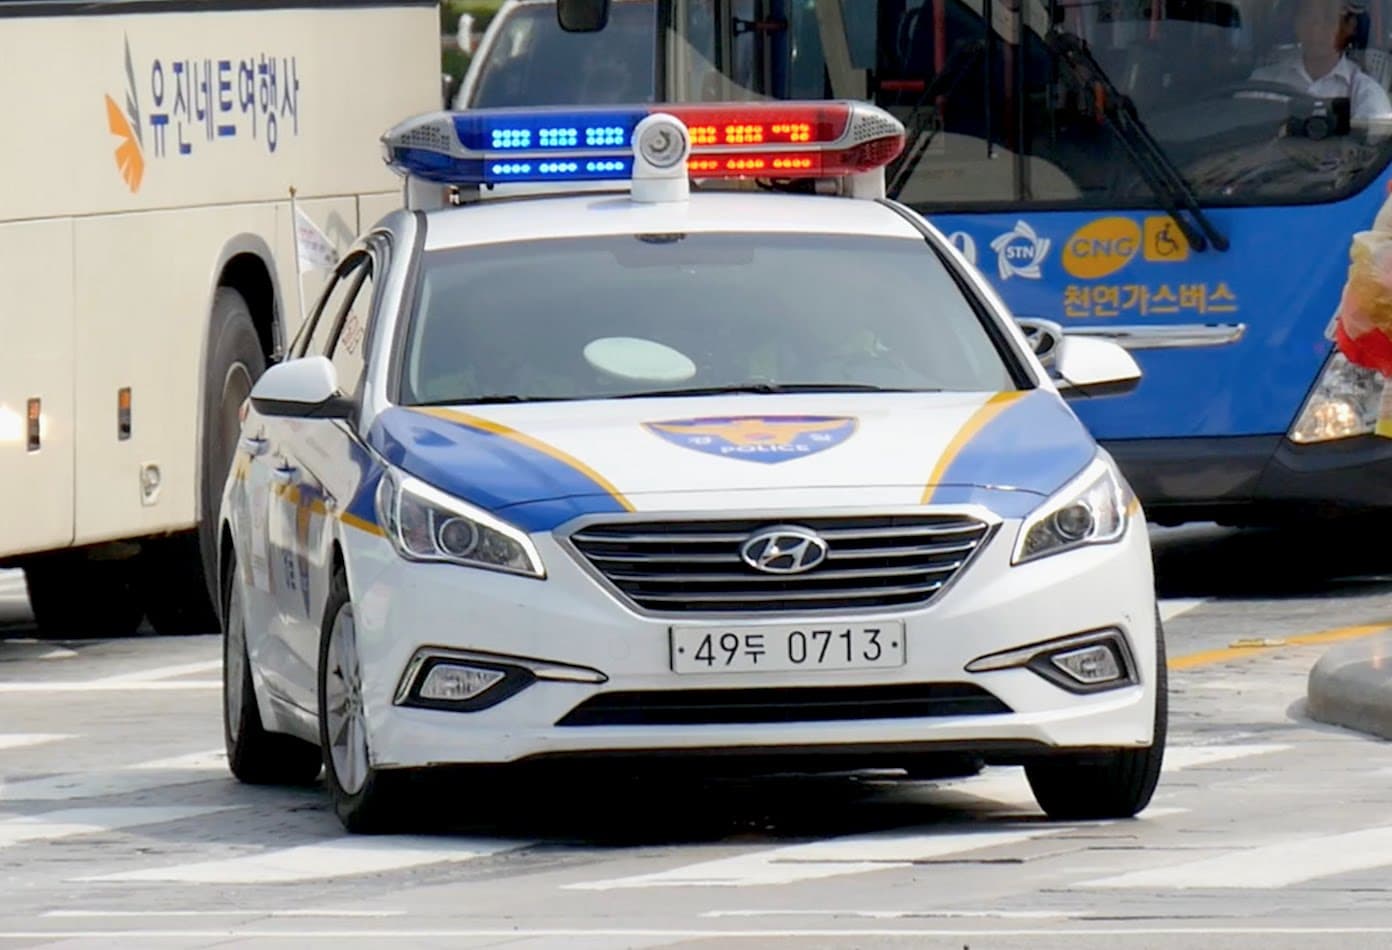 Hyundai Police Korea